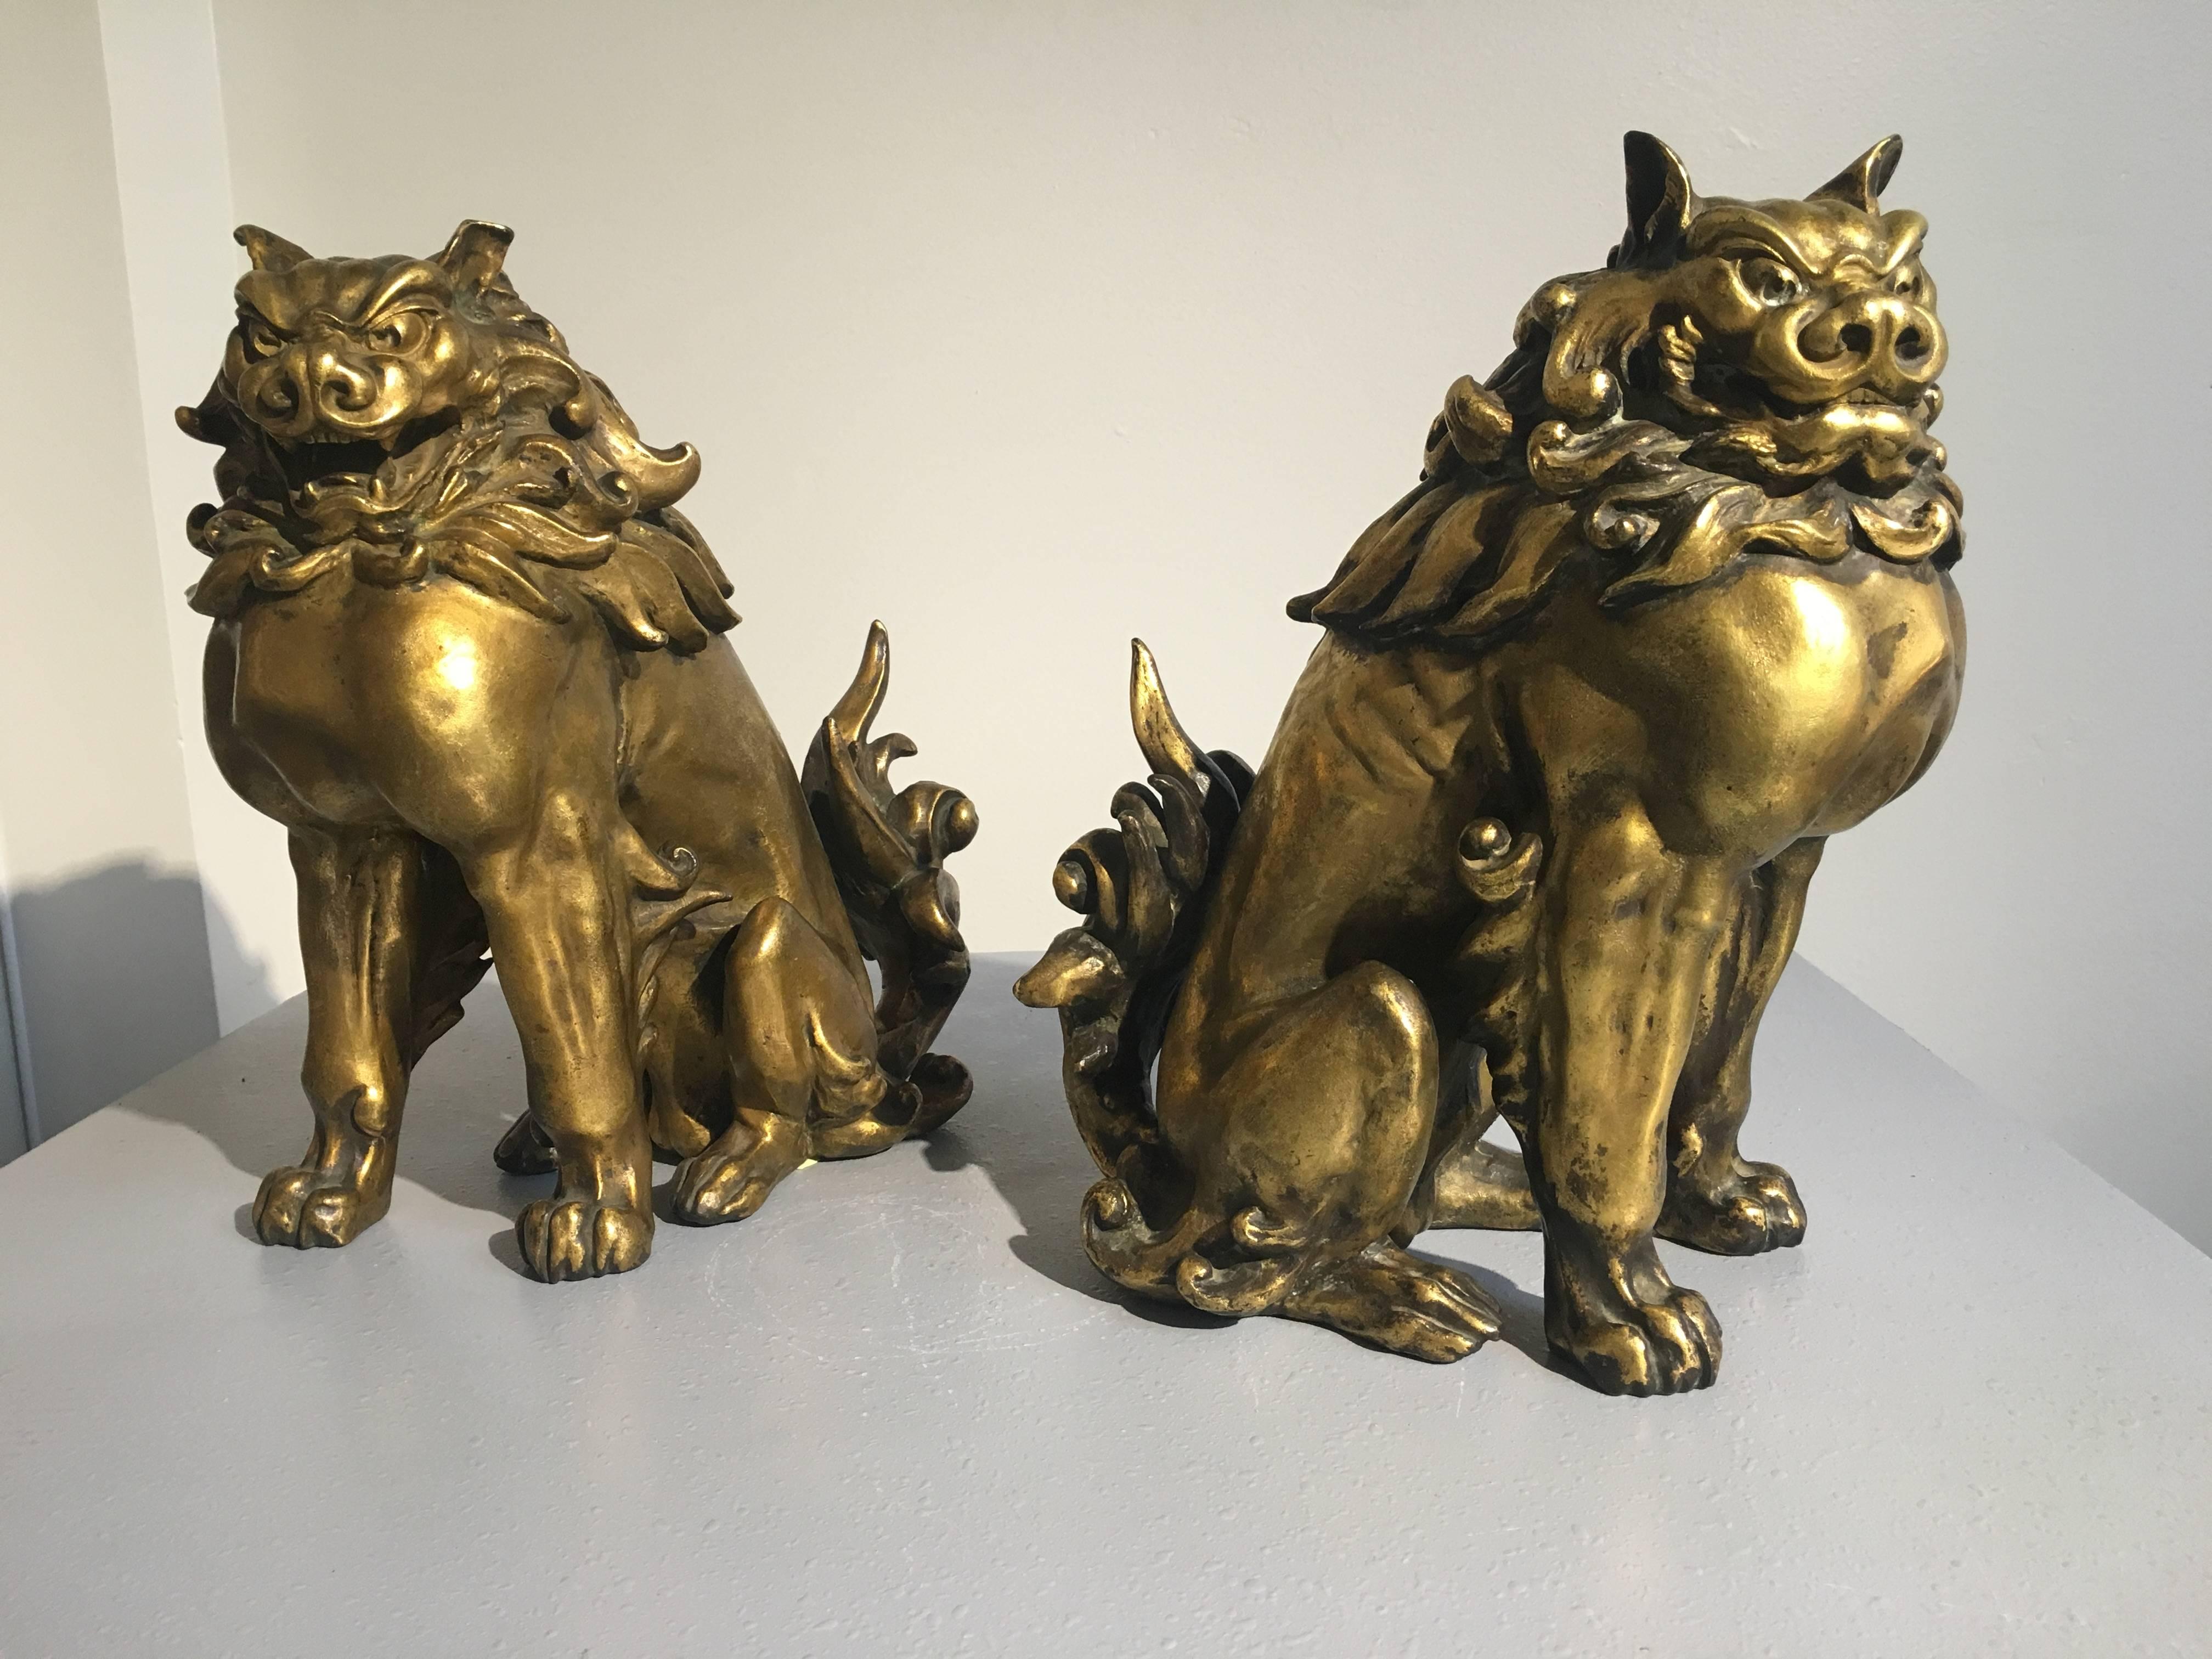 Paire d'étonnants komainu en bronze doré japonais réalisés par le célèbre sculpteur japonais Ishikawa Komei (1852-1913), période Meiji, Japon.

La paire est bien moulée, et le modèle est robuste. Ils sont représentés assis sur leurs hanches, avec